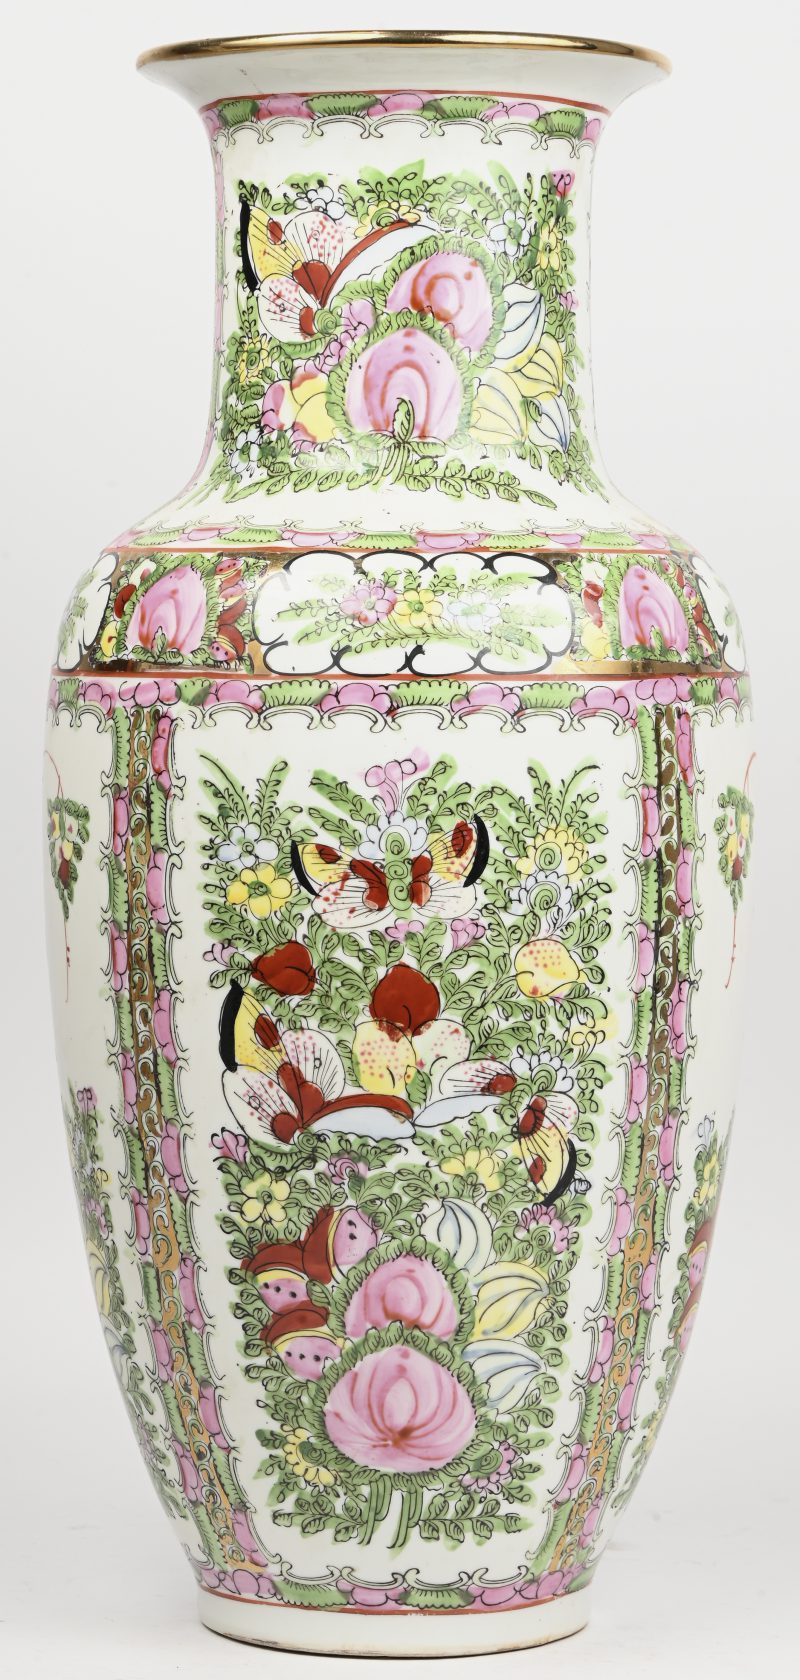 Een Chinees porseleinen vaas, meerkleurig met floraal decor en vogels versierd.